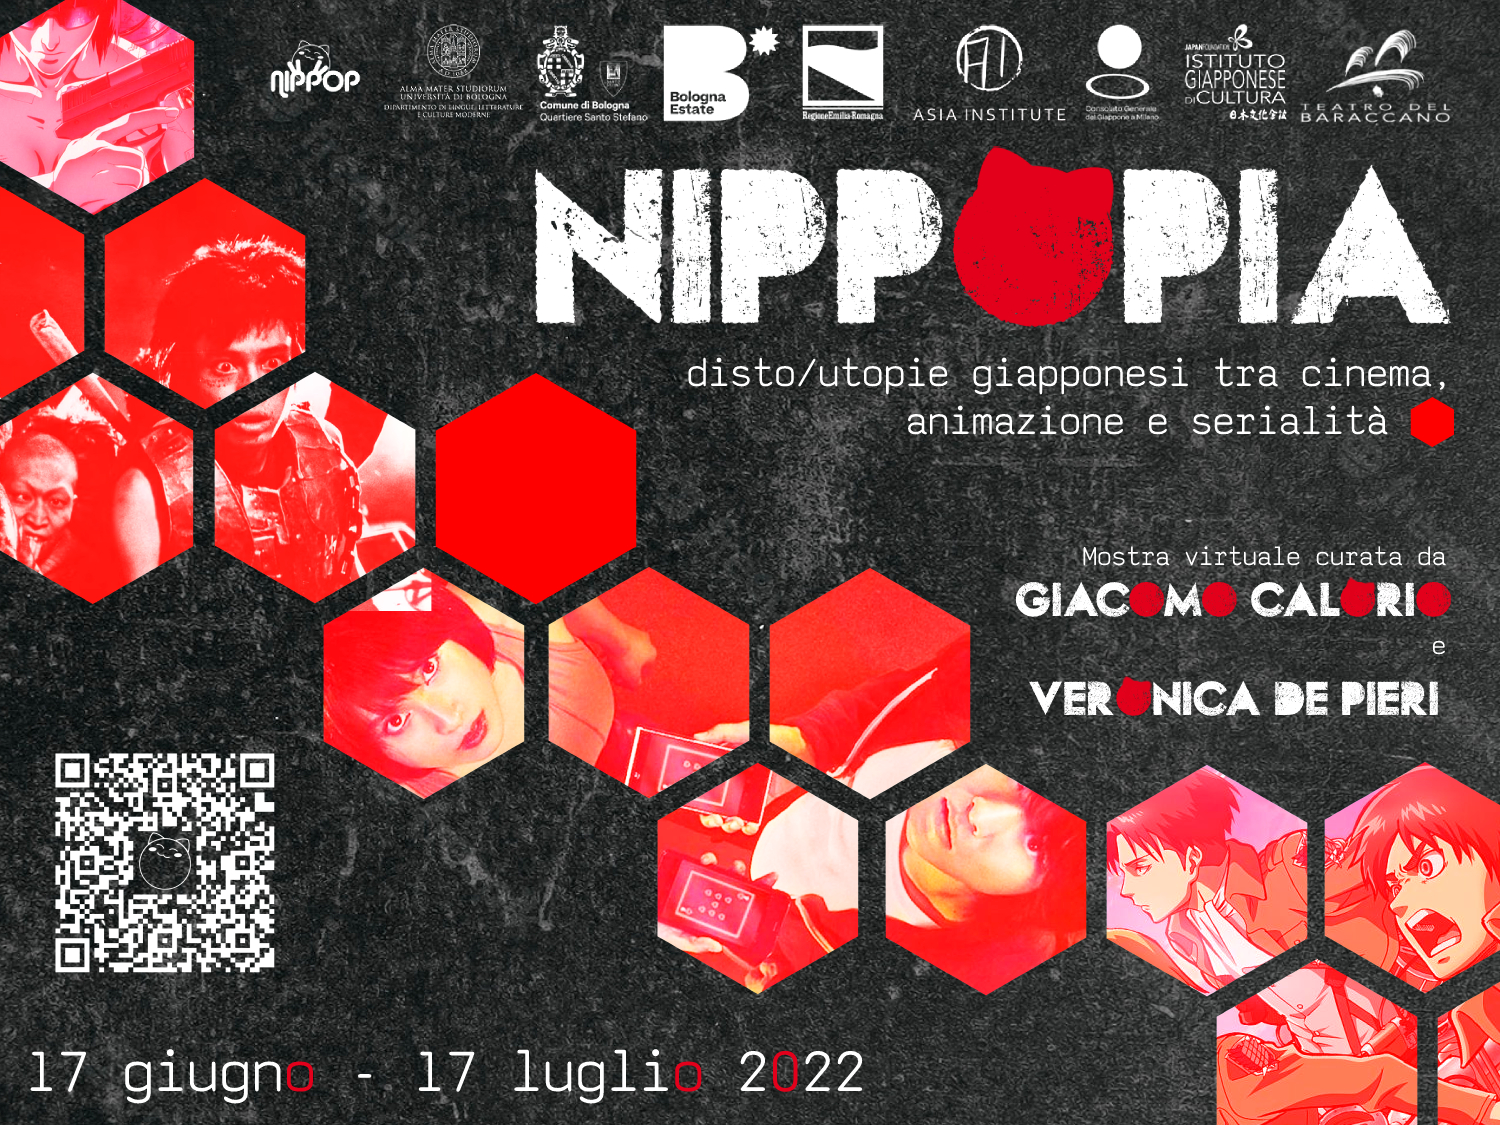 Mostra virtuale – Nippopia: disto/utopie giapponesi tra cinema, animazione e serialità